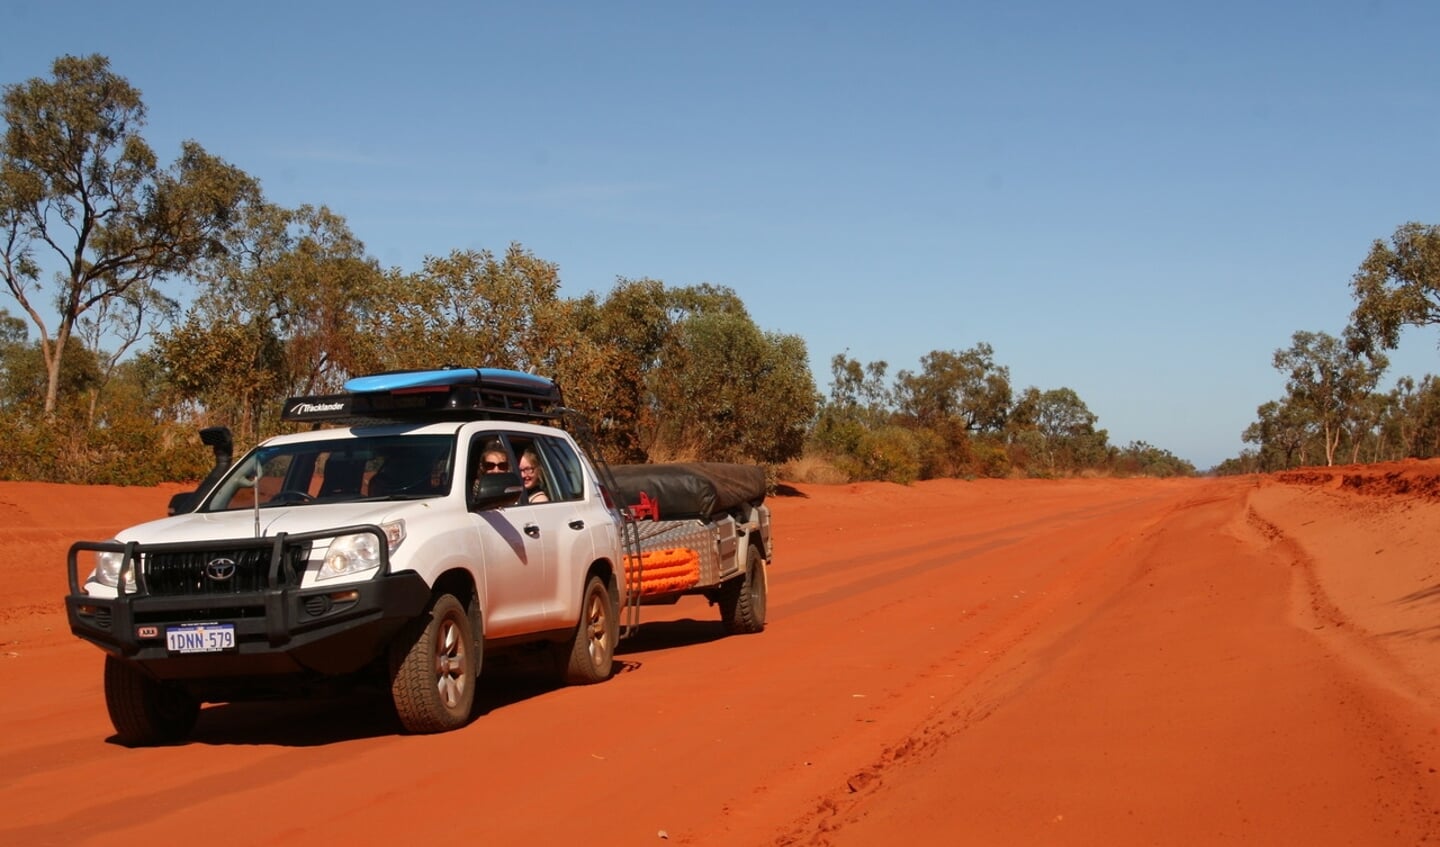 Trip over een dirt road in Australië.